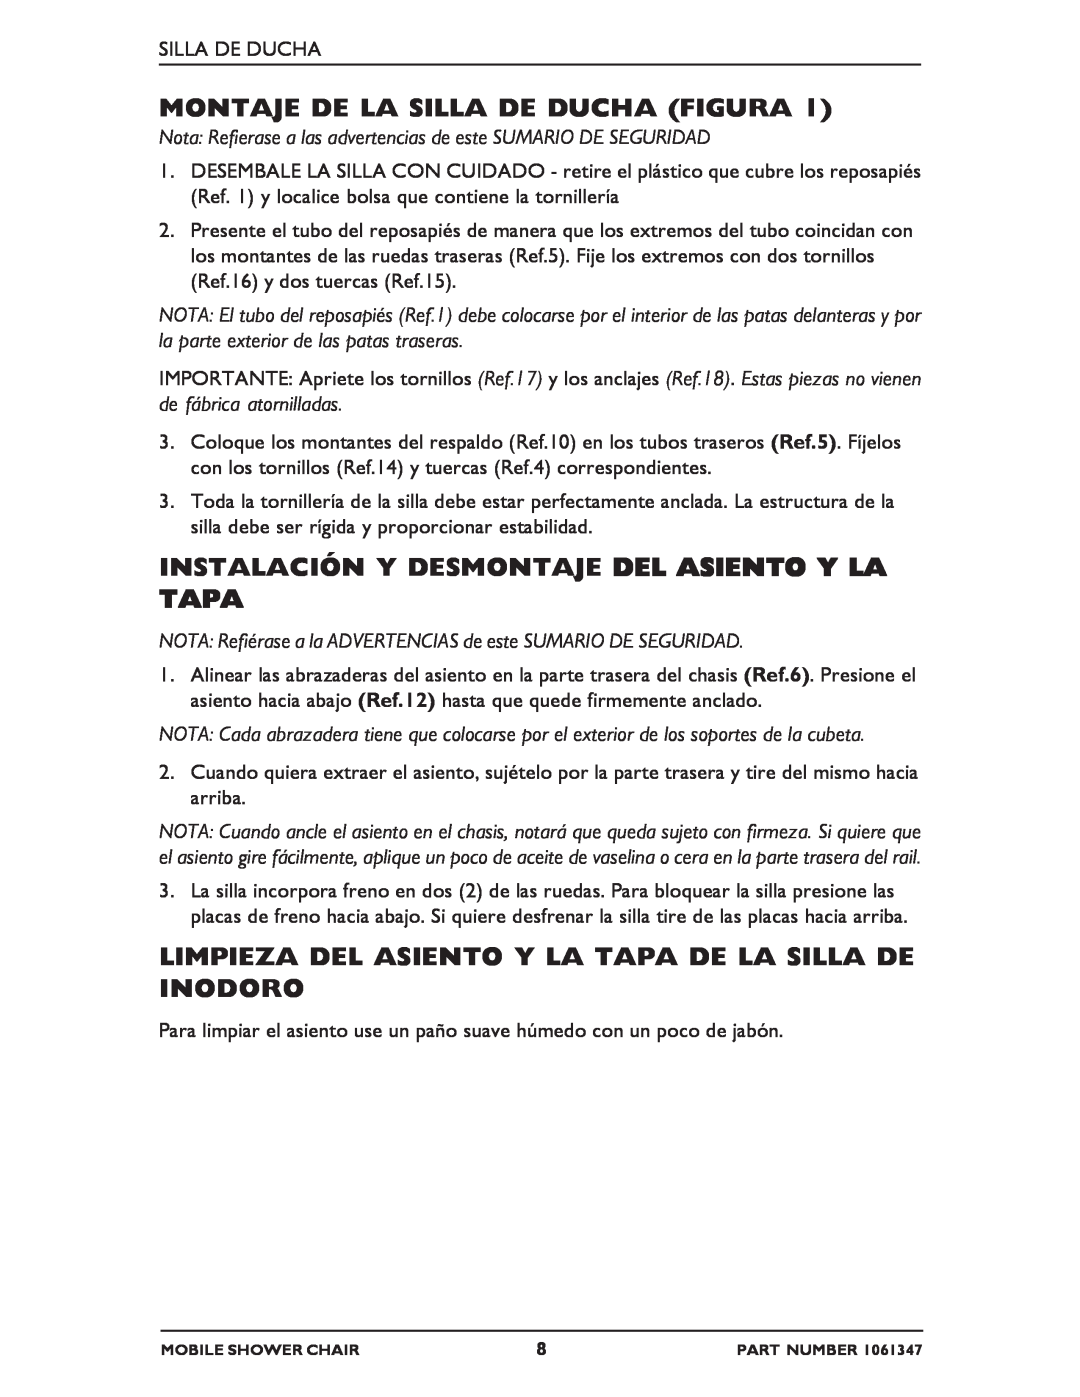 Invacare 6358E manual Montaje De La Silla De Ducha Figura, Instalación Y Desmontaje Del Asiento Y La Tapa 